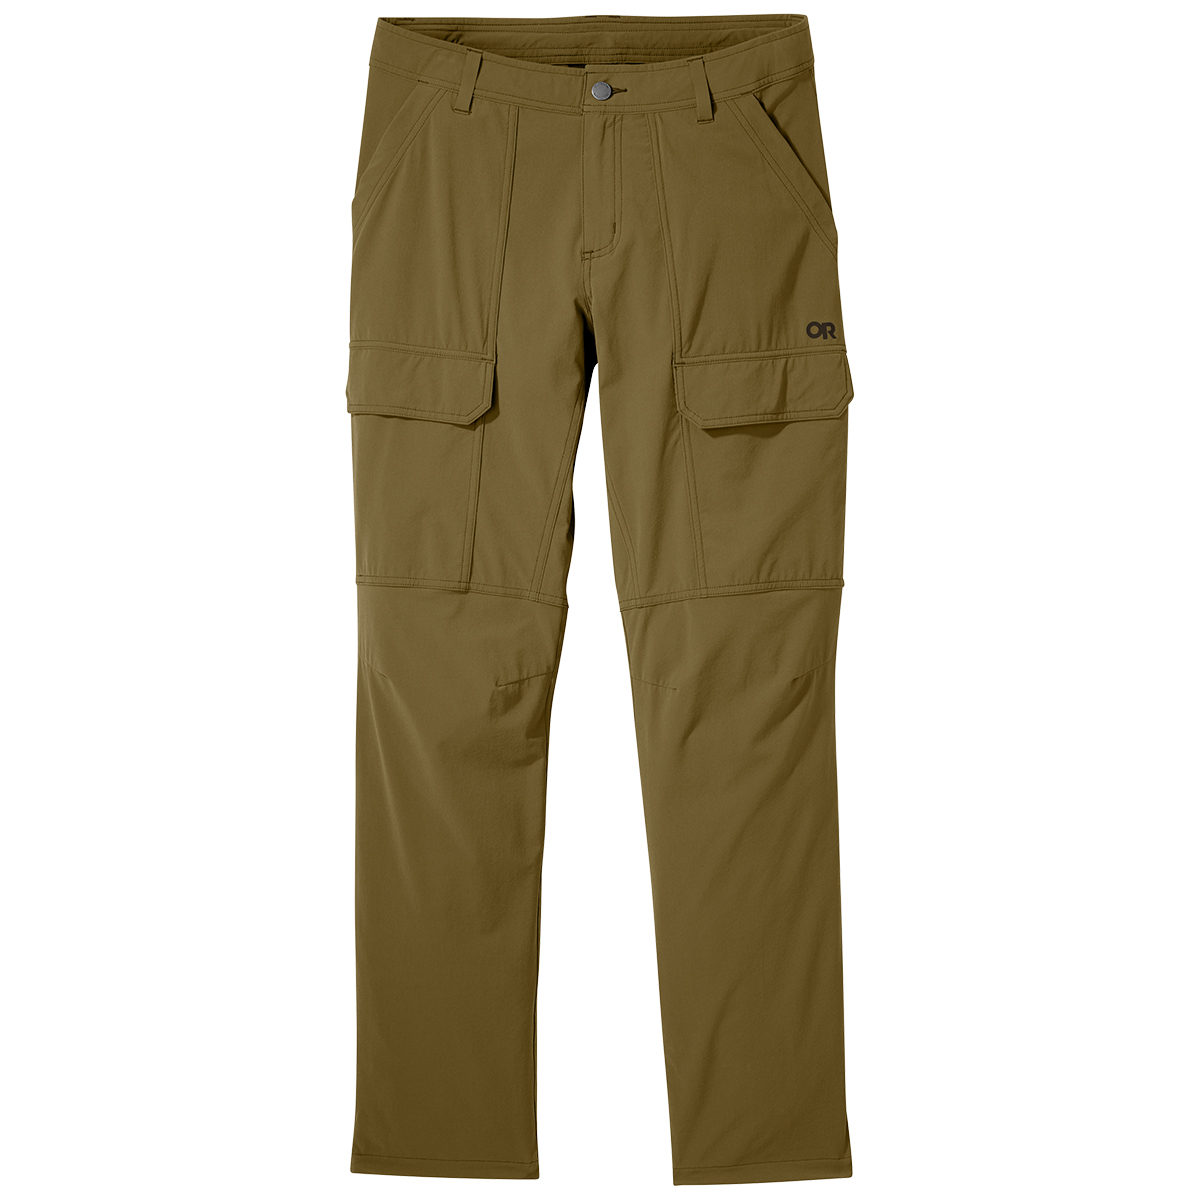 Outdoor Research Men's Ferrosi Cargo Pants